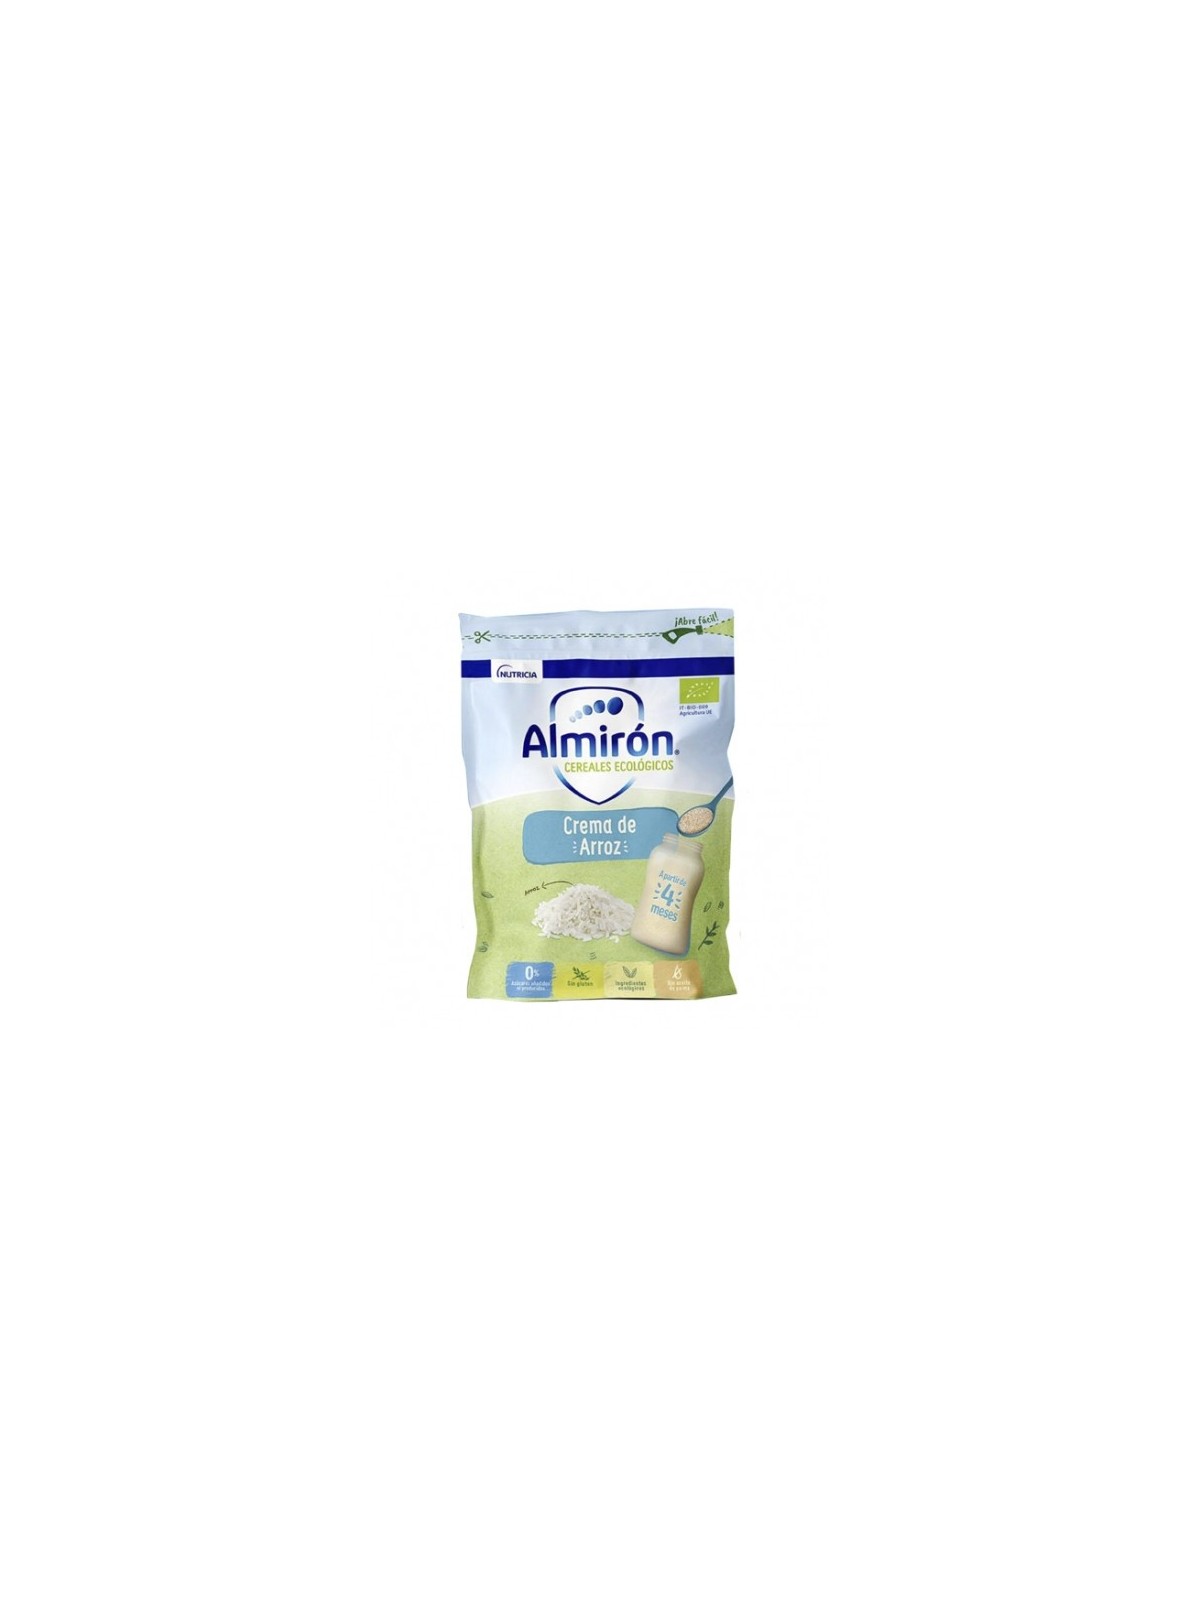 Almirón Advance Digest 1 leche para lactantes 800 gr